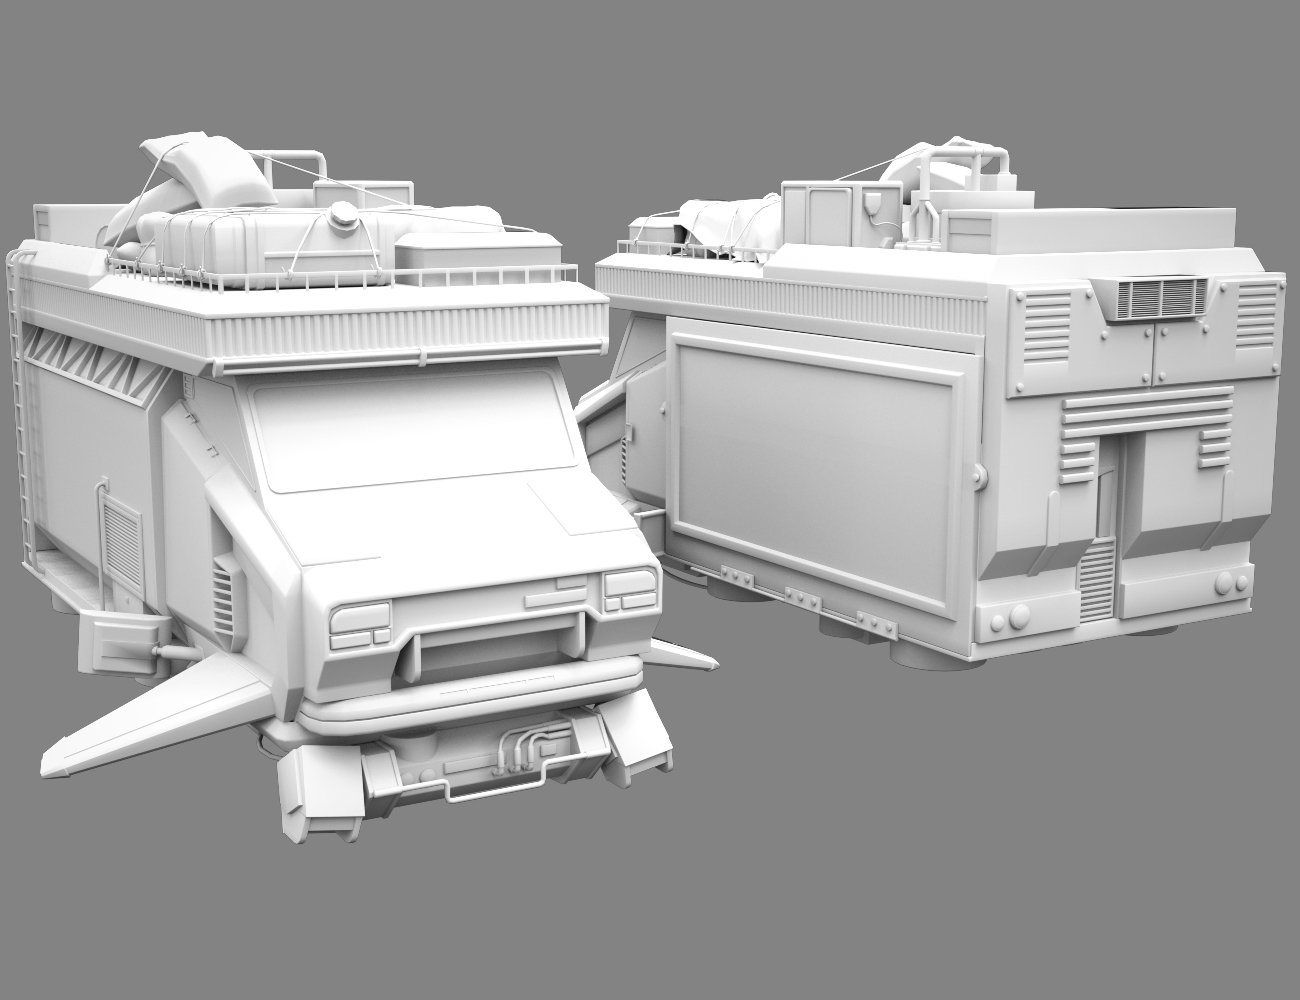 Cyber Flying Food Truck by: Xivon, 3D Models by Daz 3D